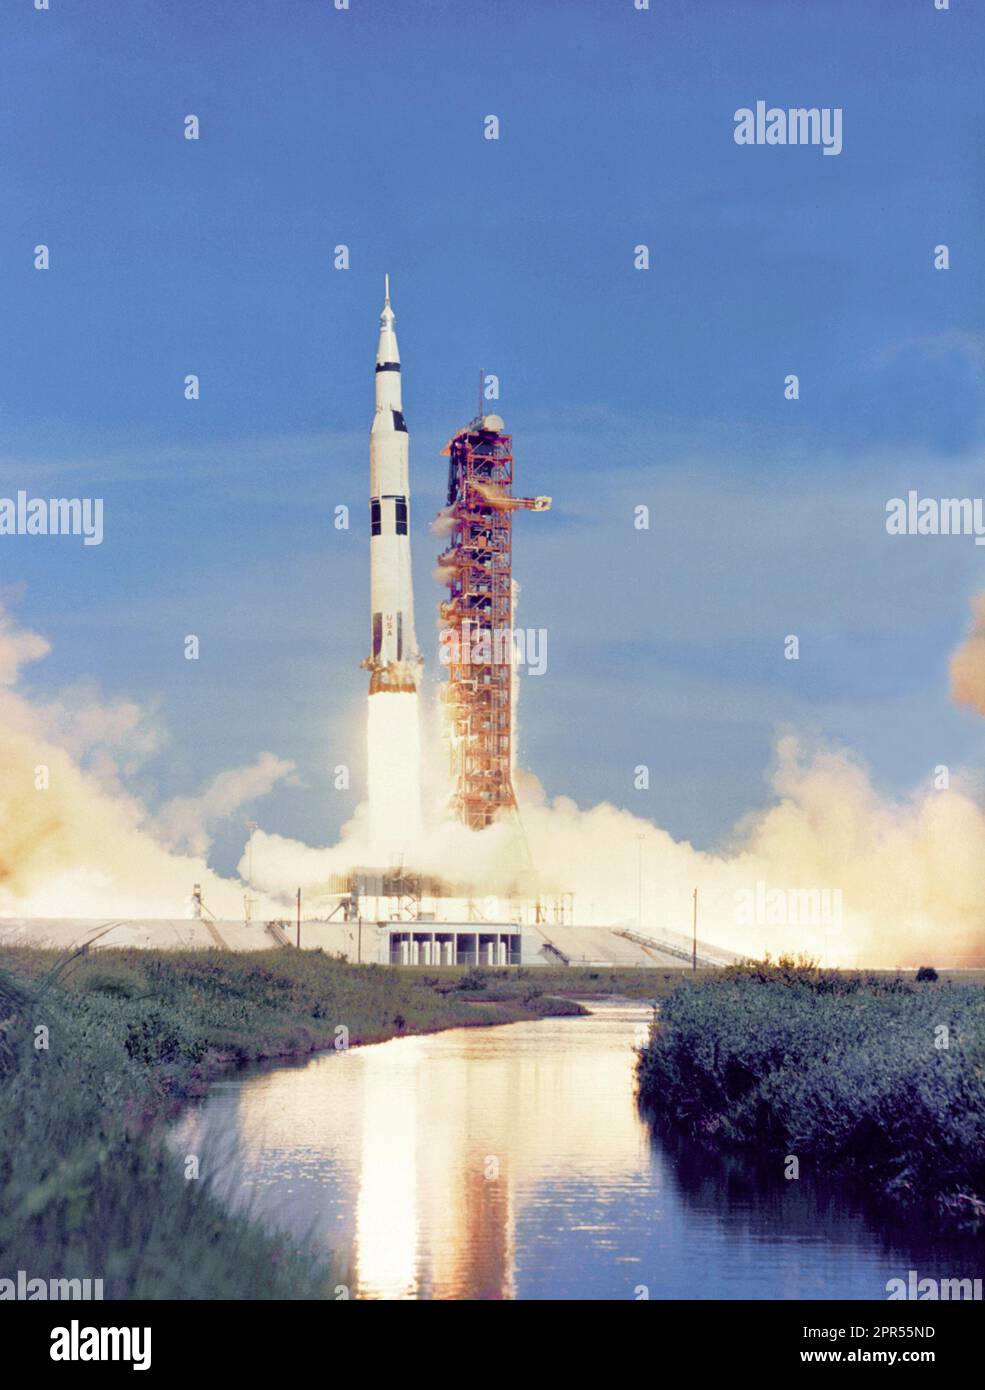 Der 363 Fuß große Apollo 15 Saturn V wird von Pad A, Launch Complex 39, Kennedy Space Center, Florida, um 9:34:00.79 Uhr, 26. Juli 1971, auf einer Mondlandungsmission gestartet. Beachten Sie, dass der Start in einem Gewässer gegenüber dem Startkomplex reflektiert wird. Stockfoto